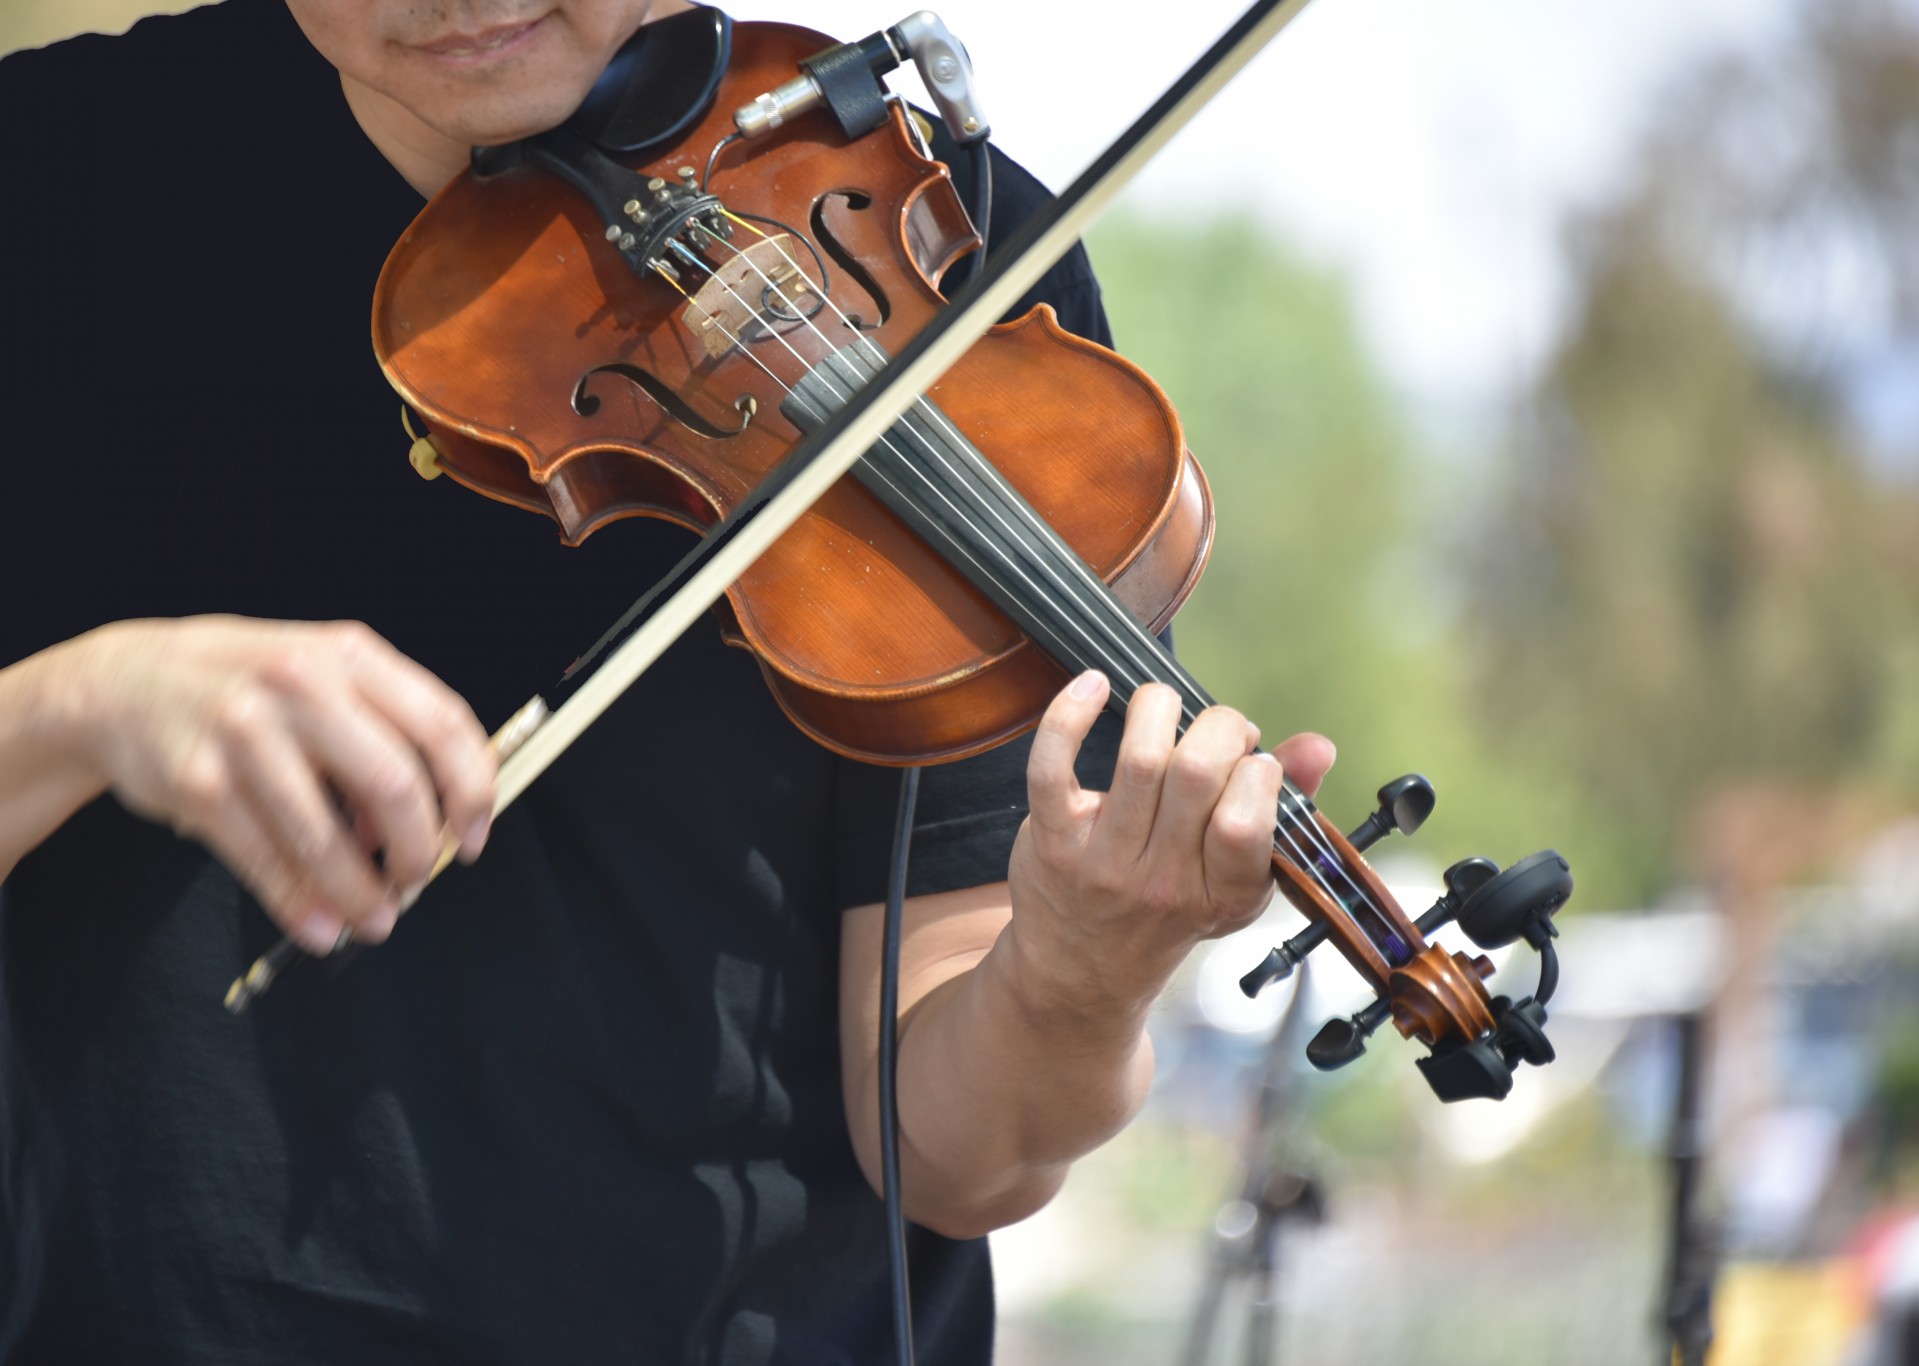 Image result for violin